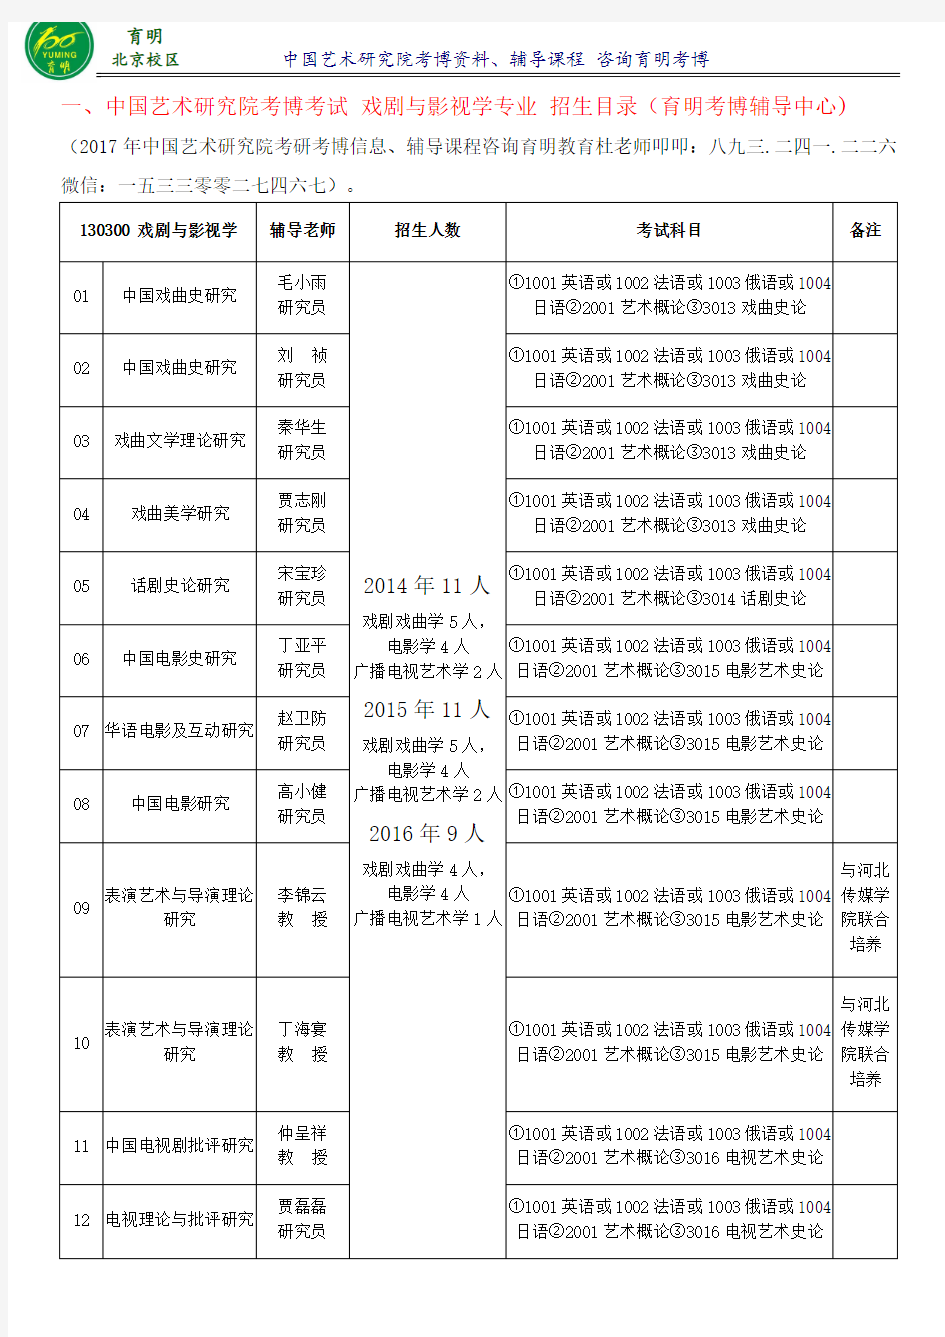 中国艺术研究院考博戏剧与影视学专业考博难度分析、报考比例、录取人数